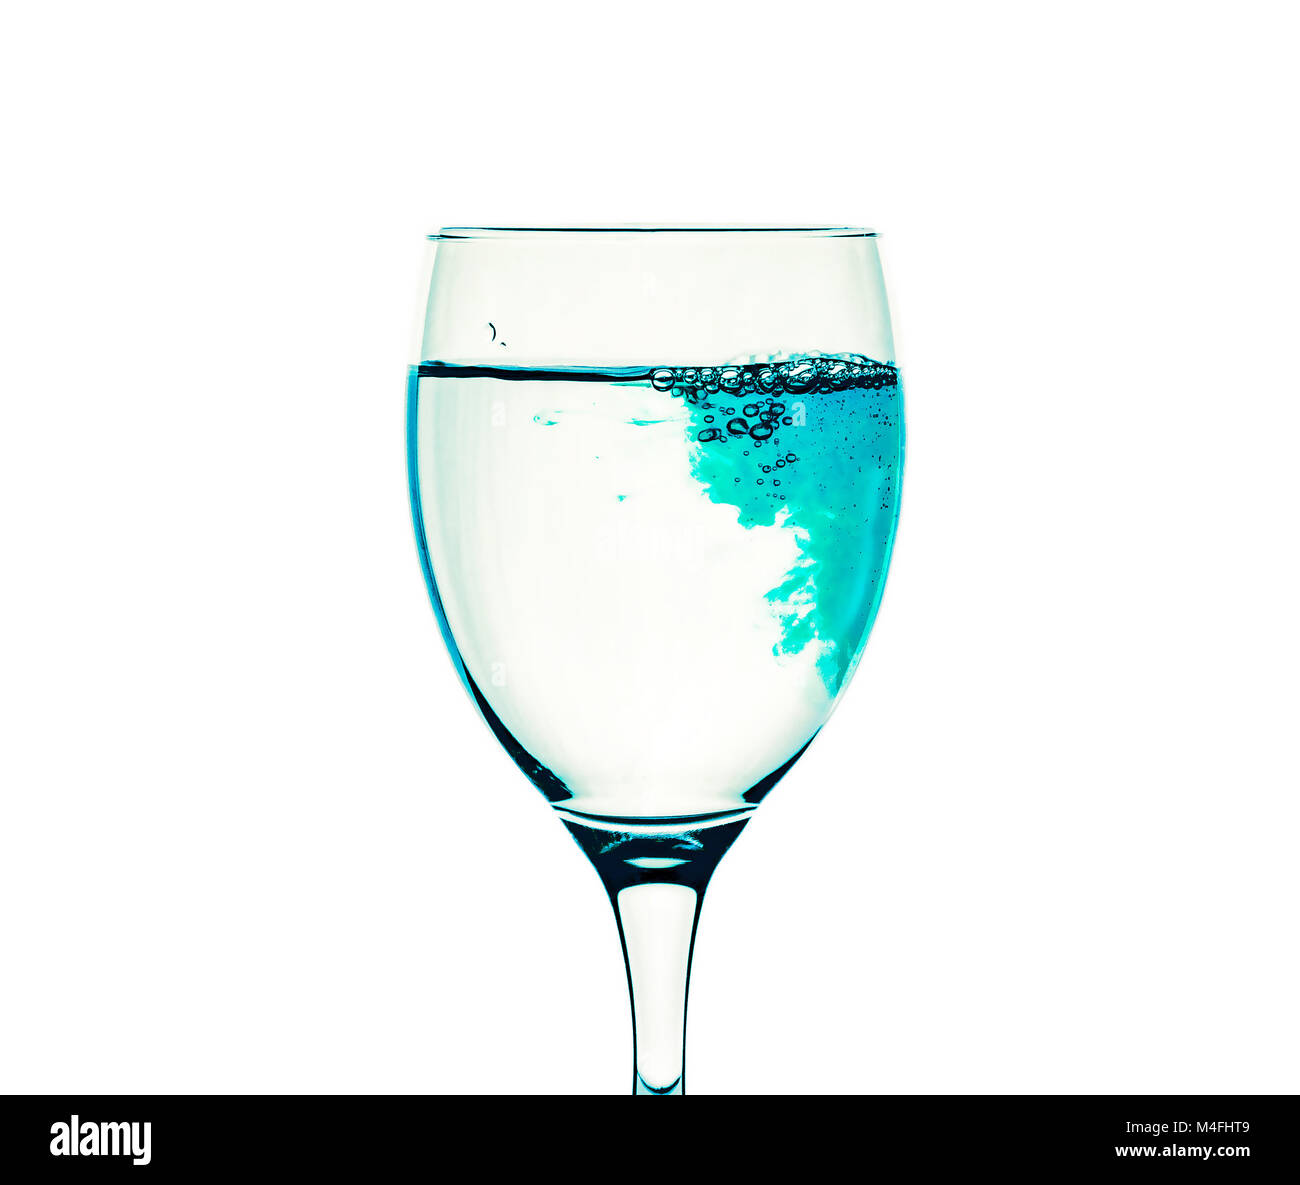 Ein Glas mit klarem Wasser ist mit blauen Flüssigkeit gefüllt  Stockfotografie - Alamy